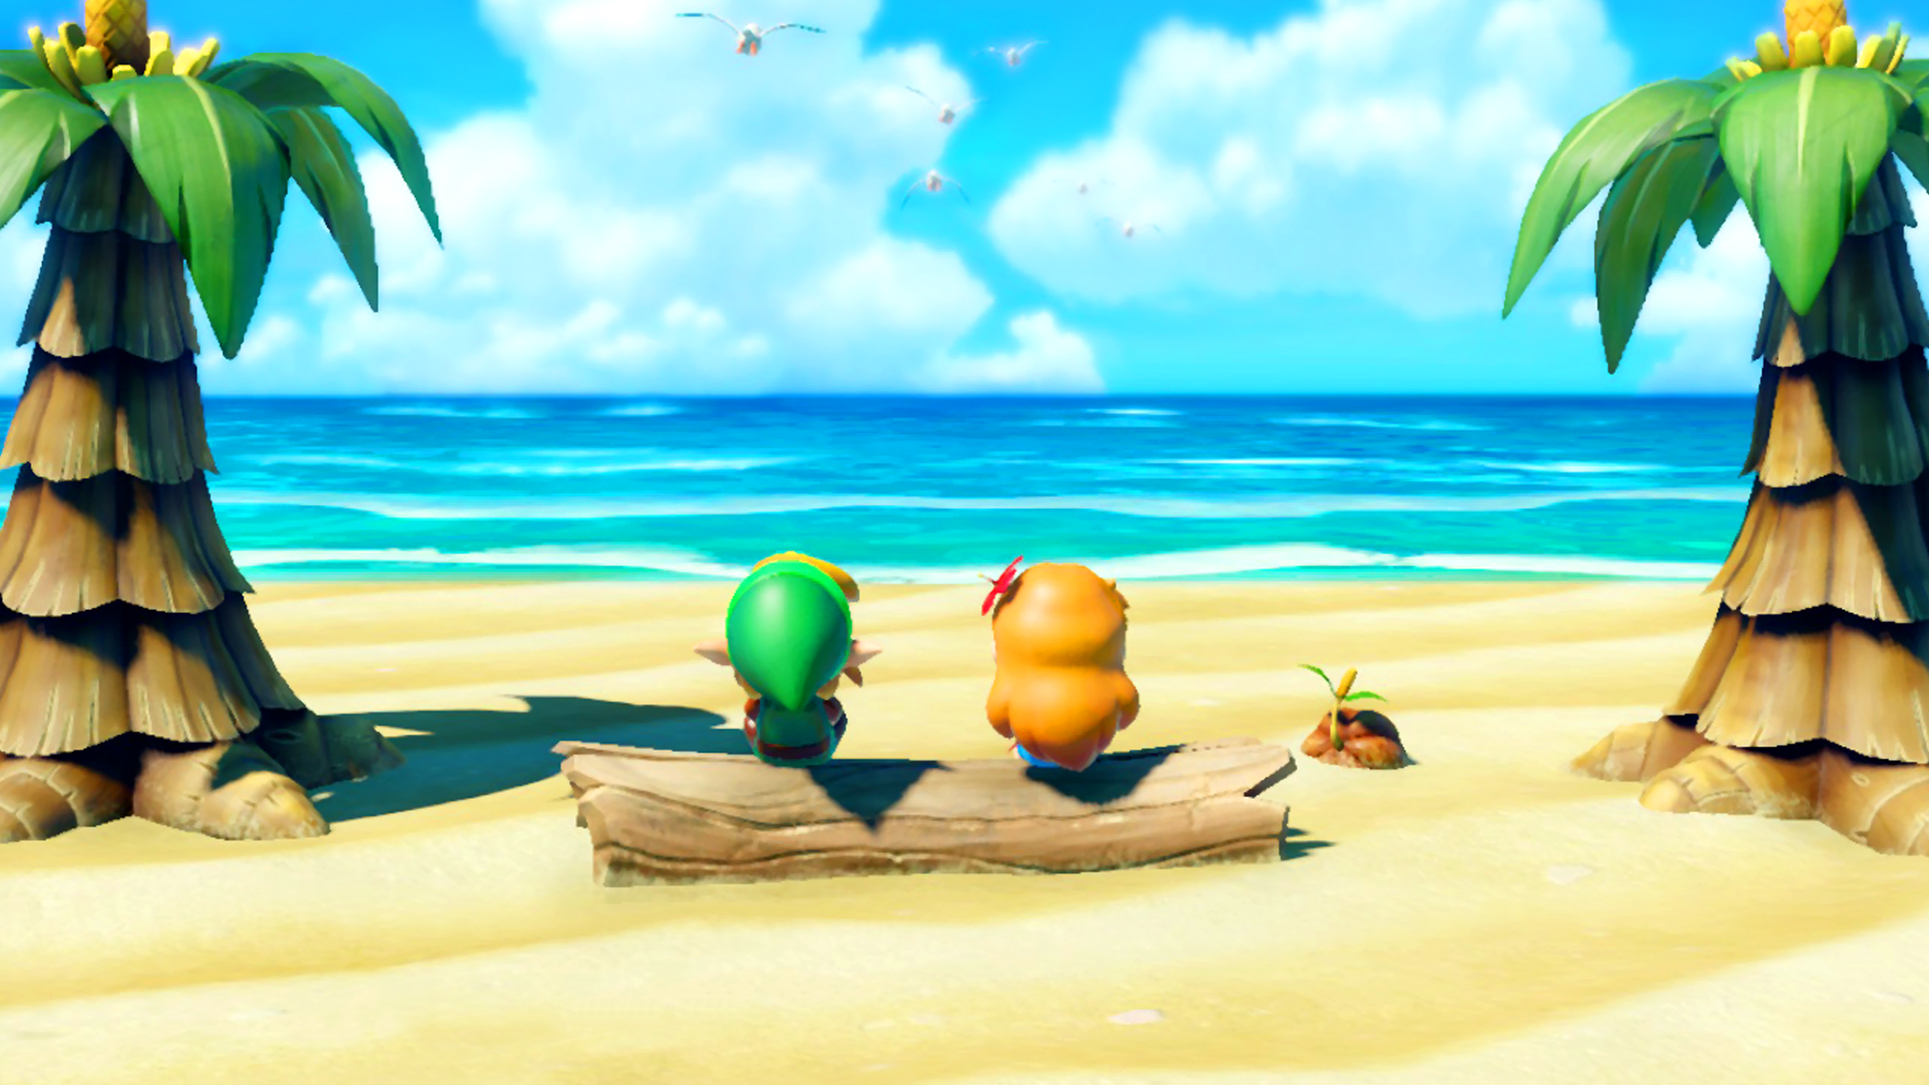 The Legend of Zelda: Link's Awakening Beach Wallpaper.